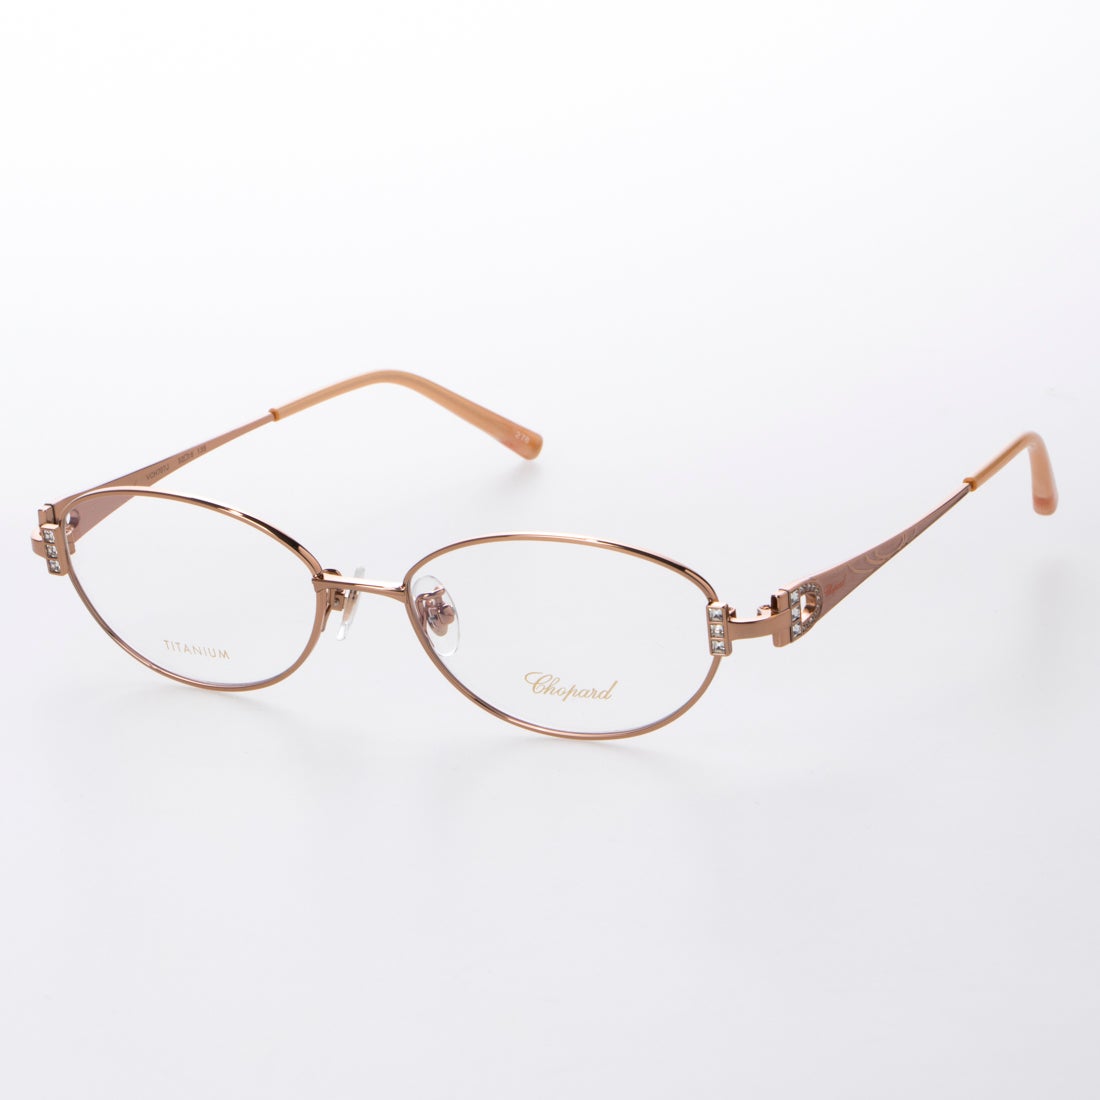 ショパール Chopard メガネ 眼鏡 アイウェア レディース メンズ オレンジゴールド ファッション通販 Fashion Walker